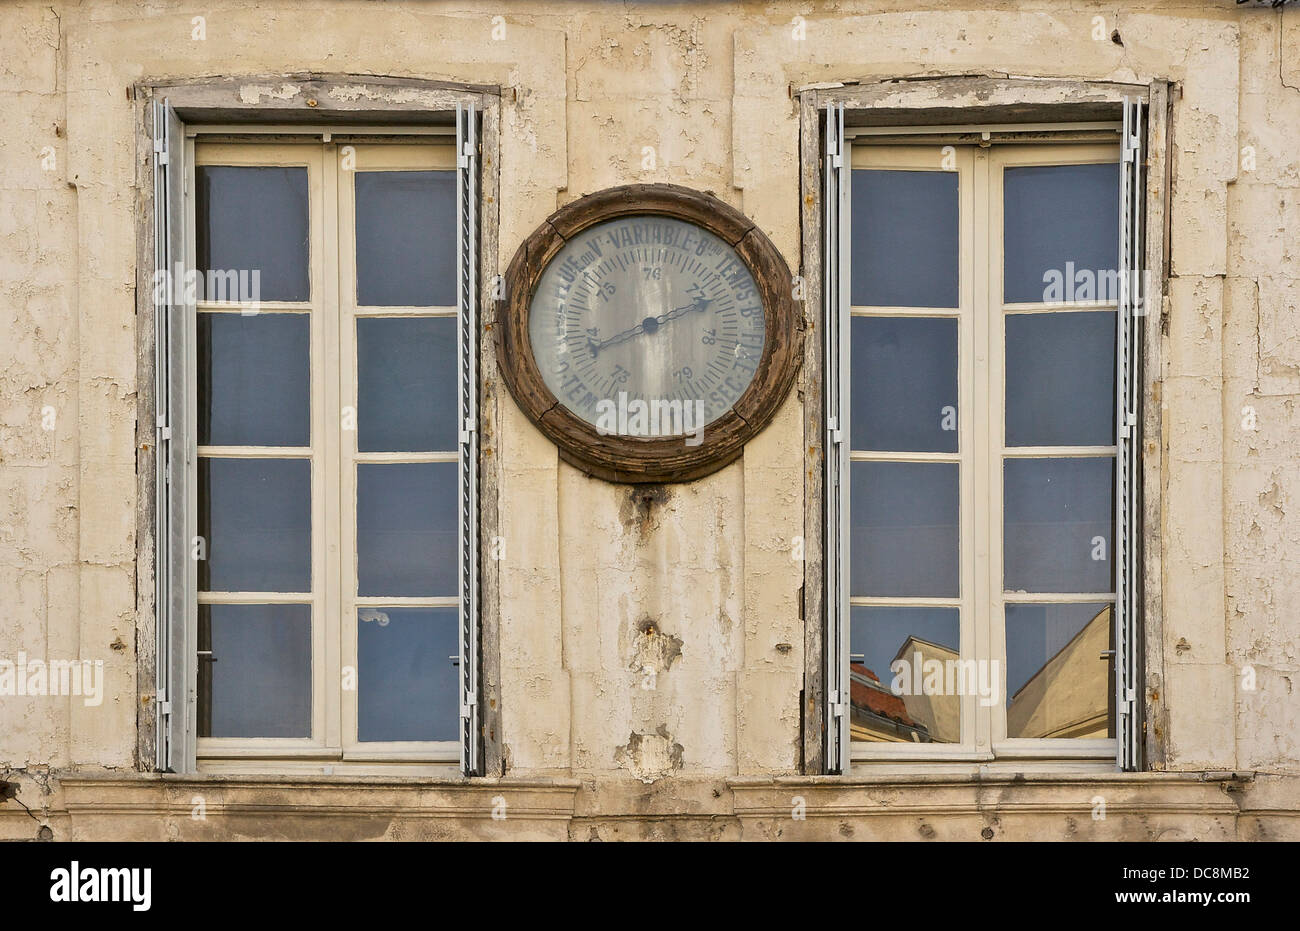 Un baromètre entre deux fenêtres, dans une rue de La Rochelle, France. Banque D'Images